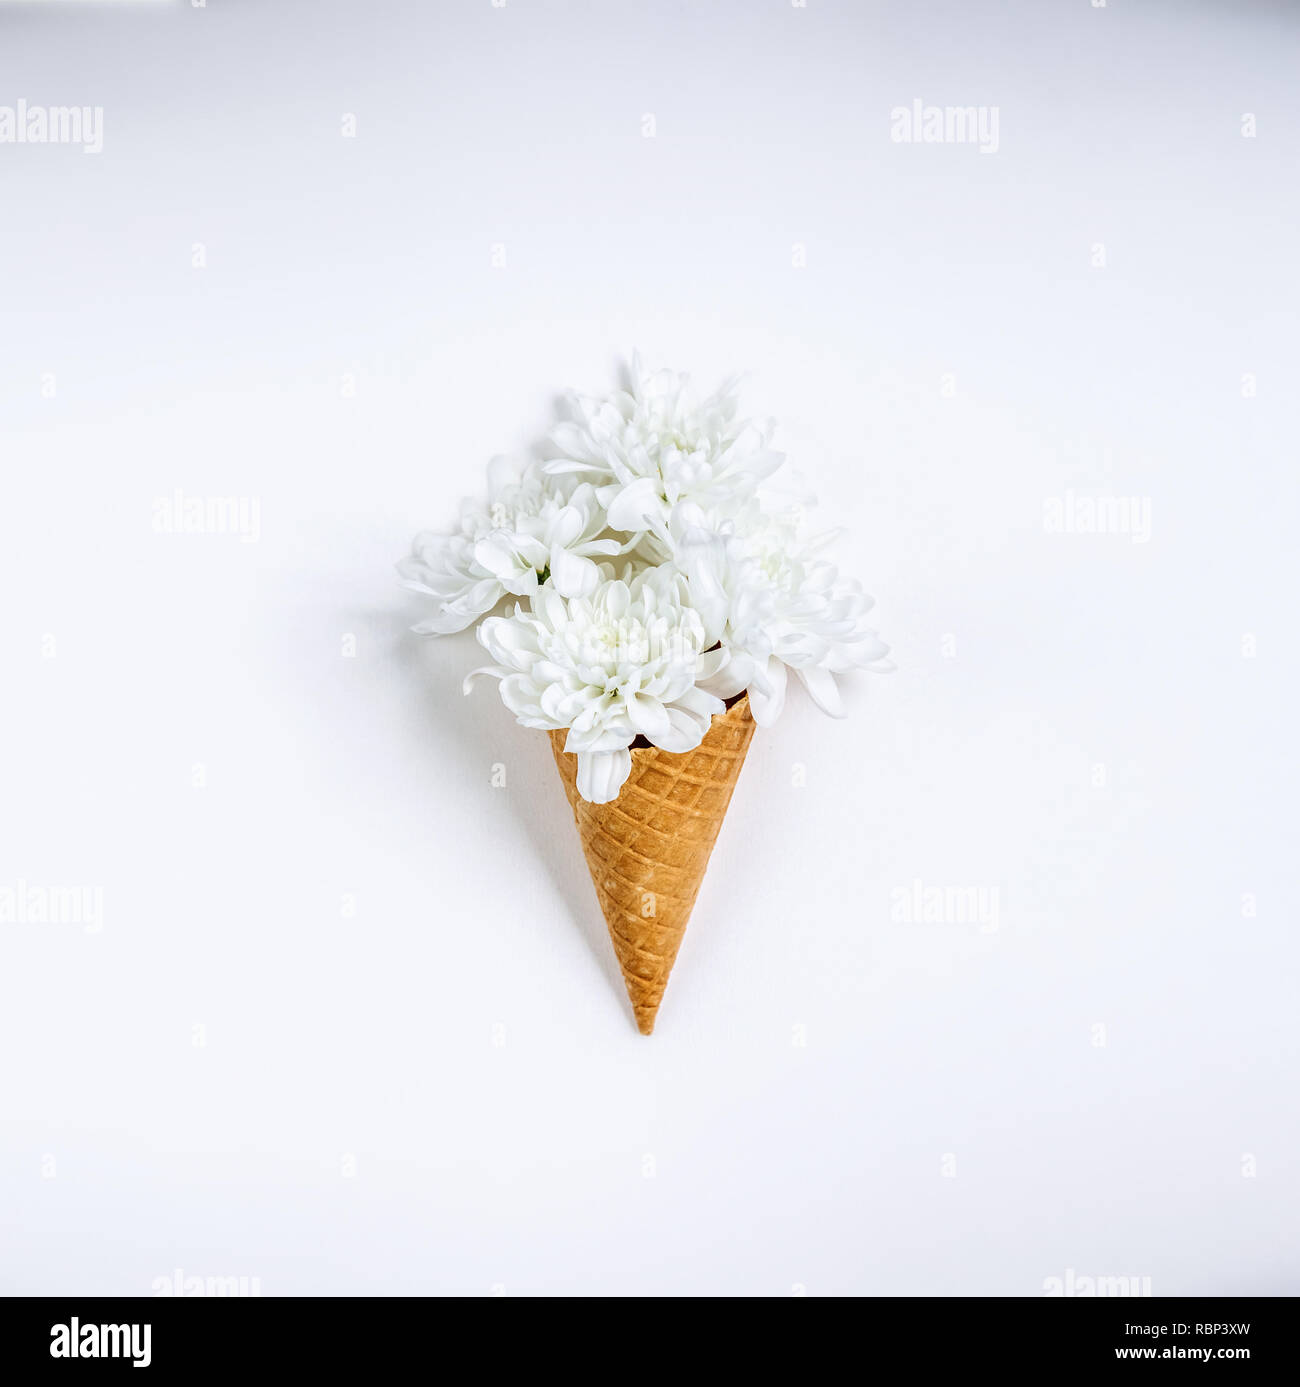 Schöne einzigartige Blume in Eis auf weißem Hintergrund. Blumenschmuck, Flachbild Styling legen. Ansicht von oben. Kreative still life Idee der Feder wallpap Stockfoto